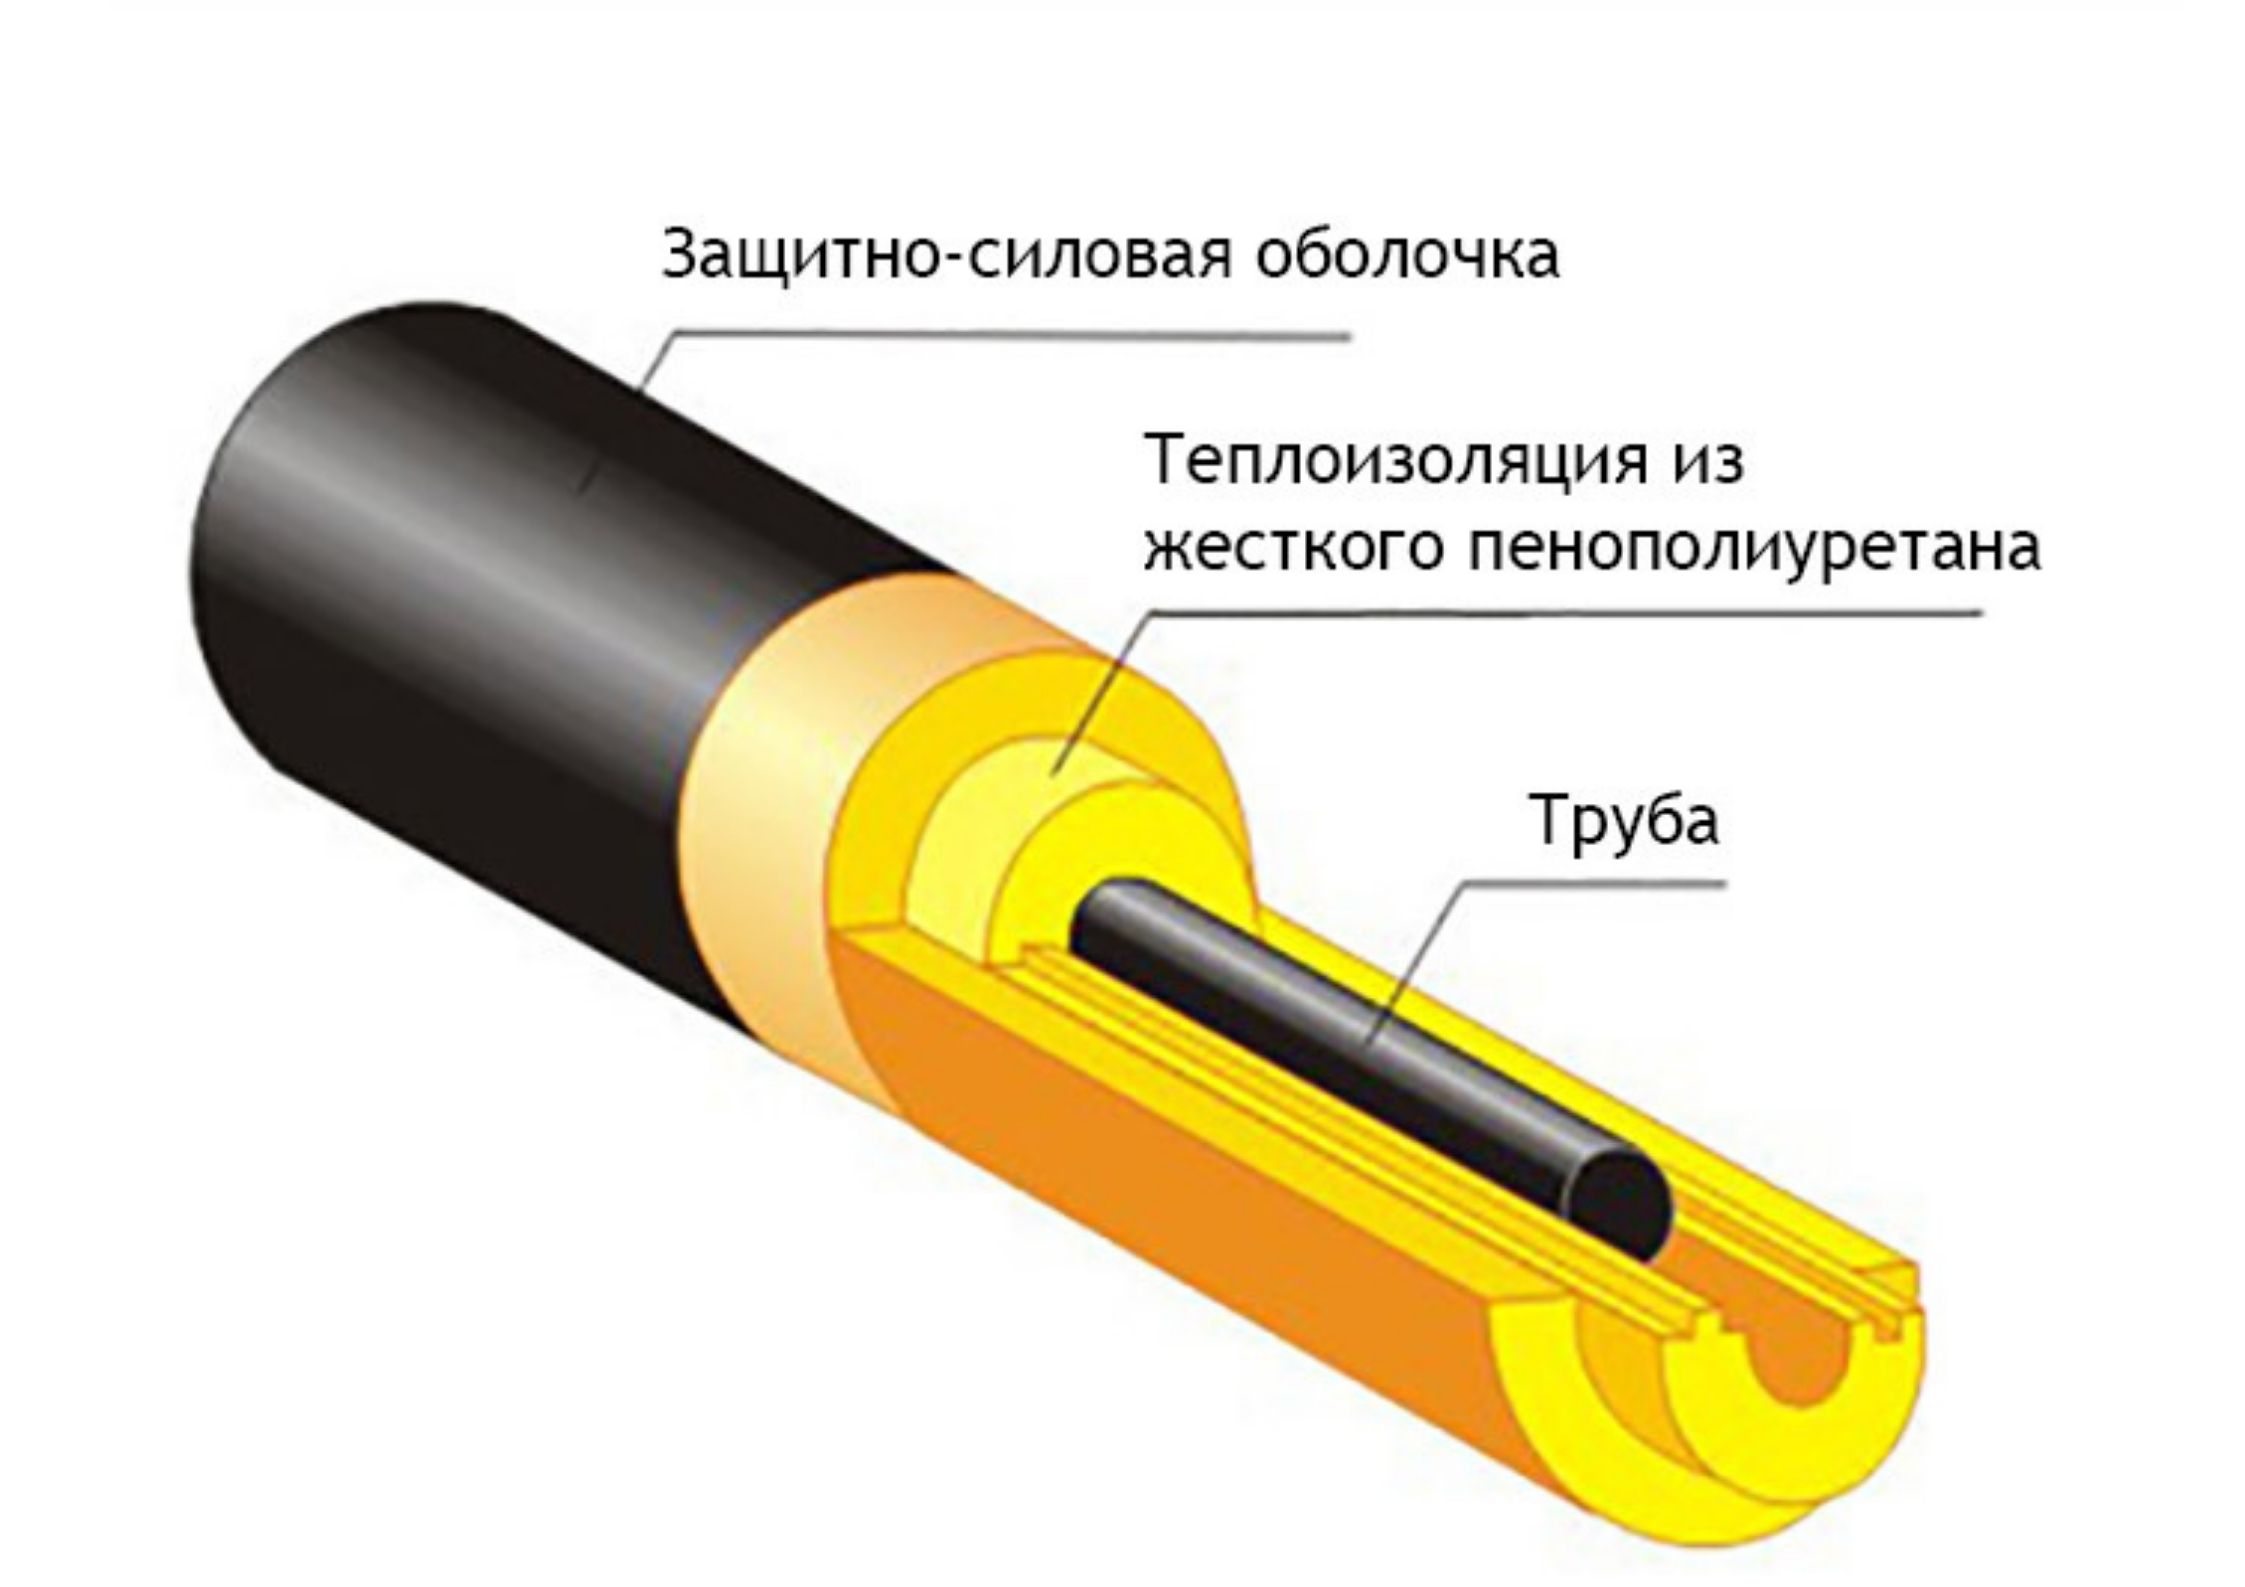 Правила теплоизоляции для труб отопления - как выбрать материал, рассчитать толщину и смонтировать